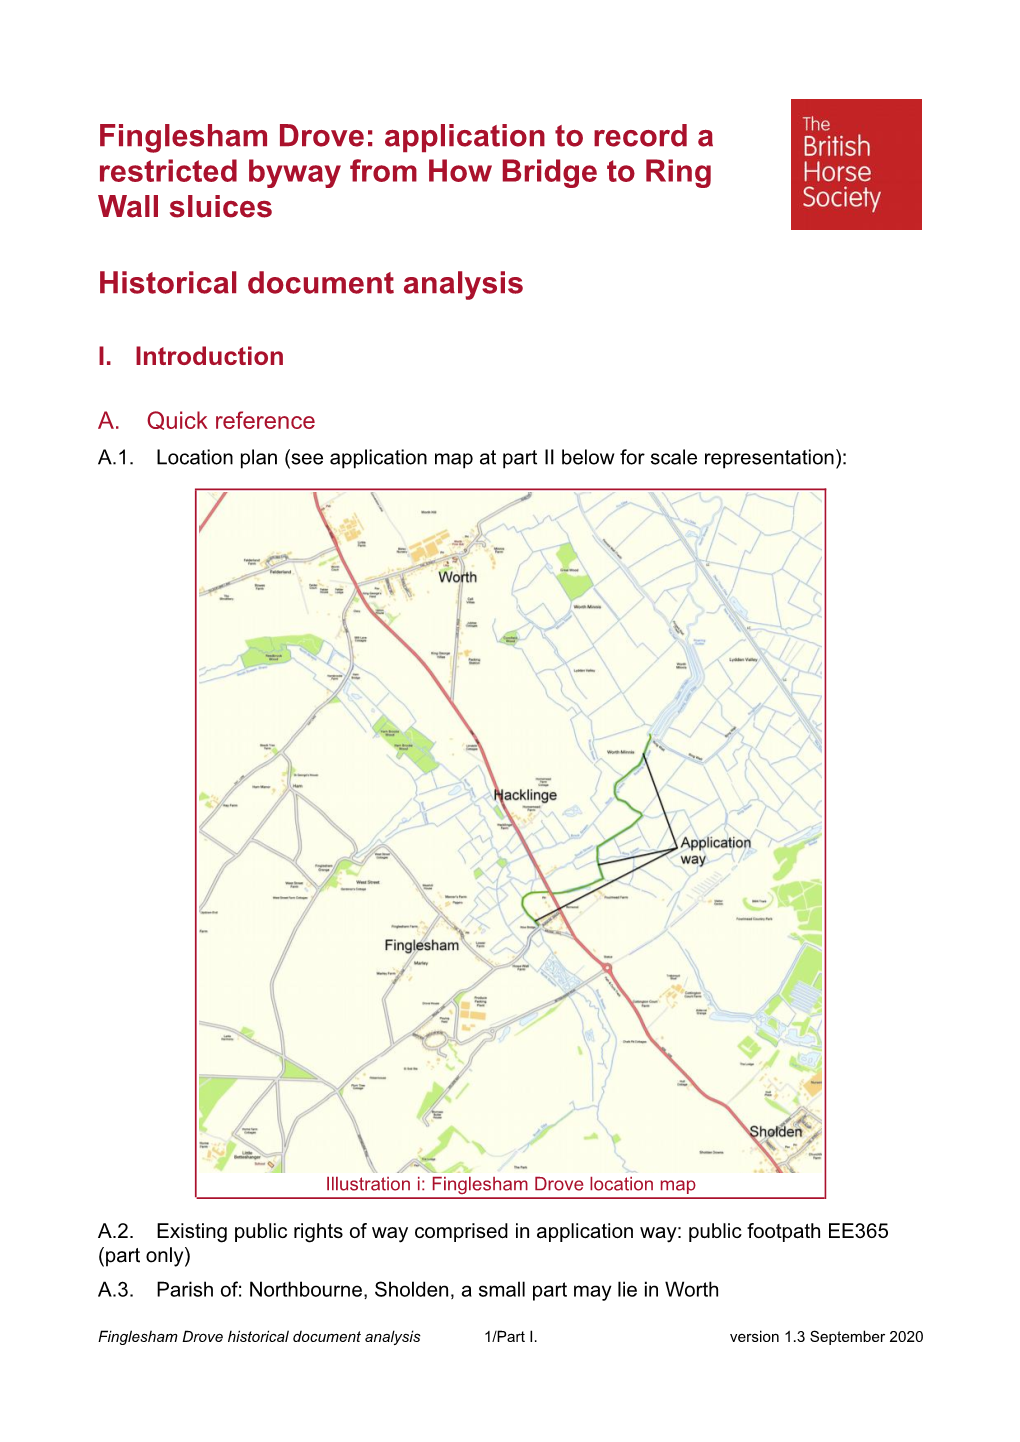 Finglesham Drove Document Analysis